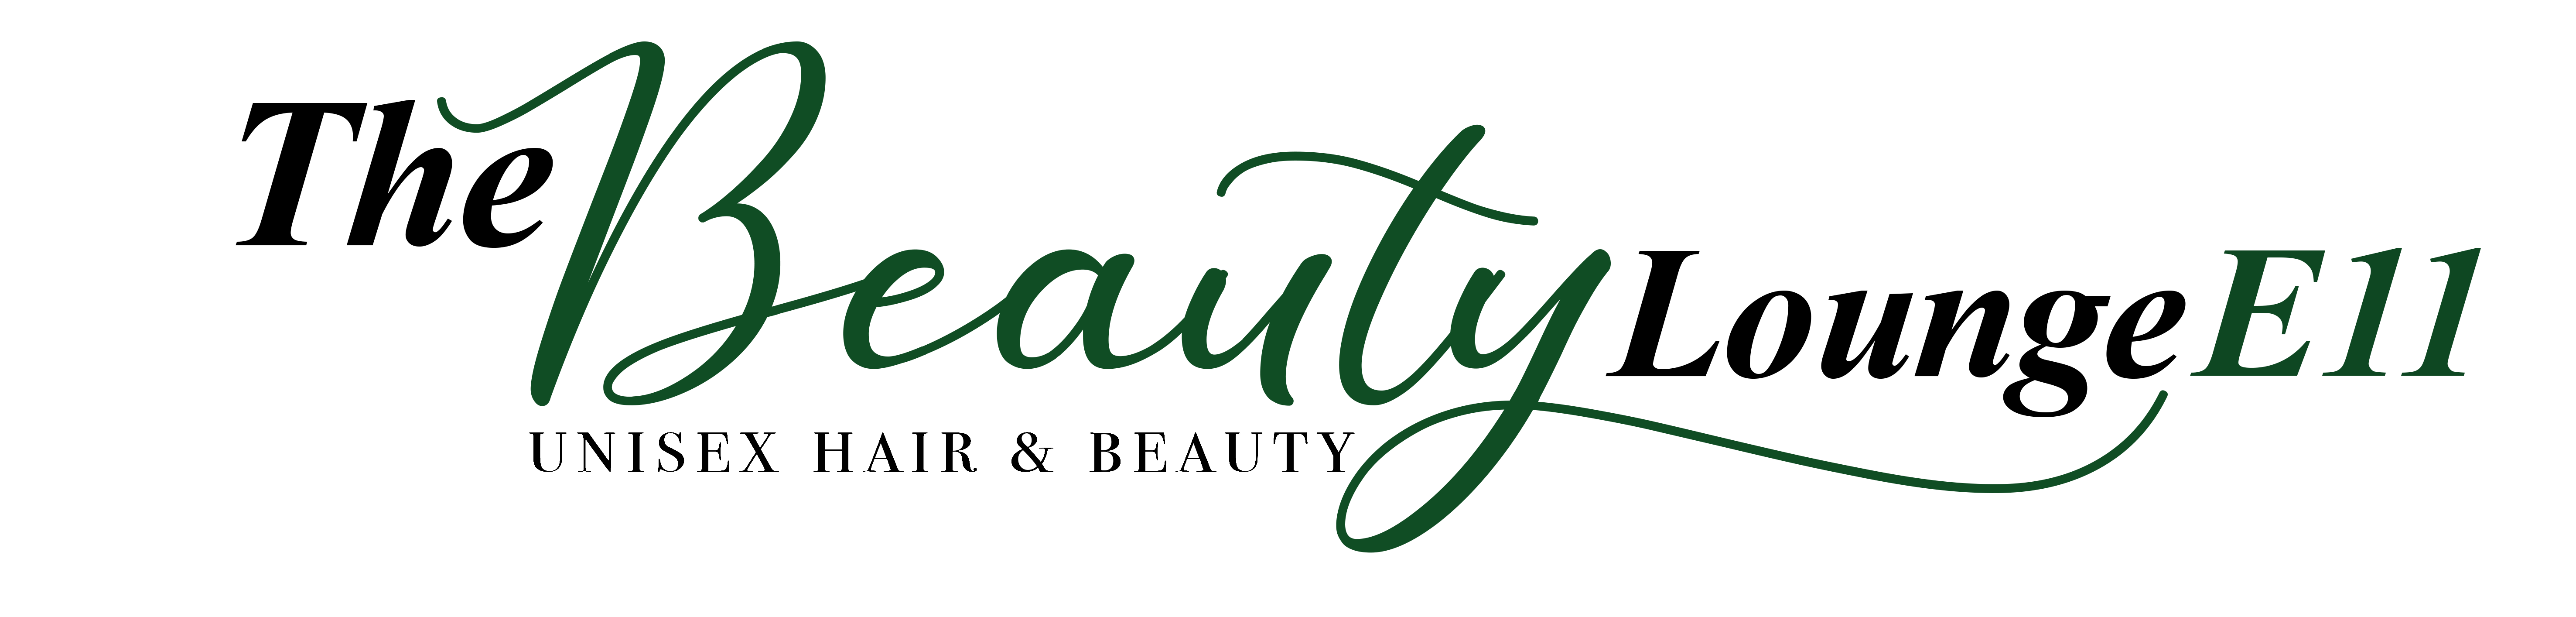 The Beauty Lounge E11 | Unisex Hair & Beauty | Leytonstone, London